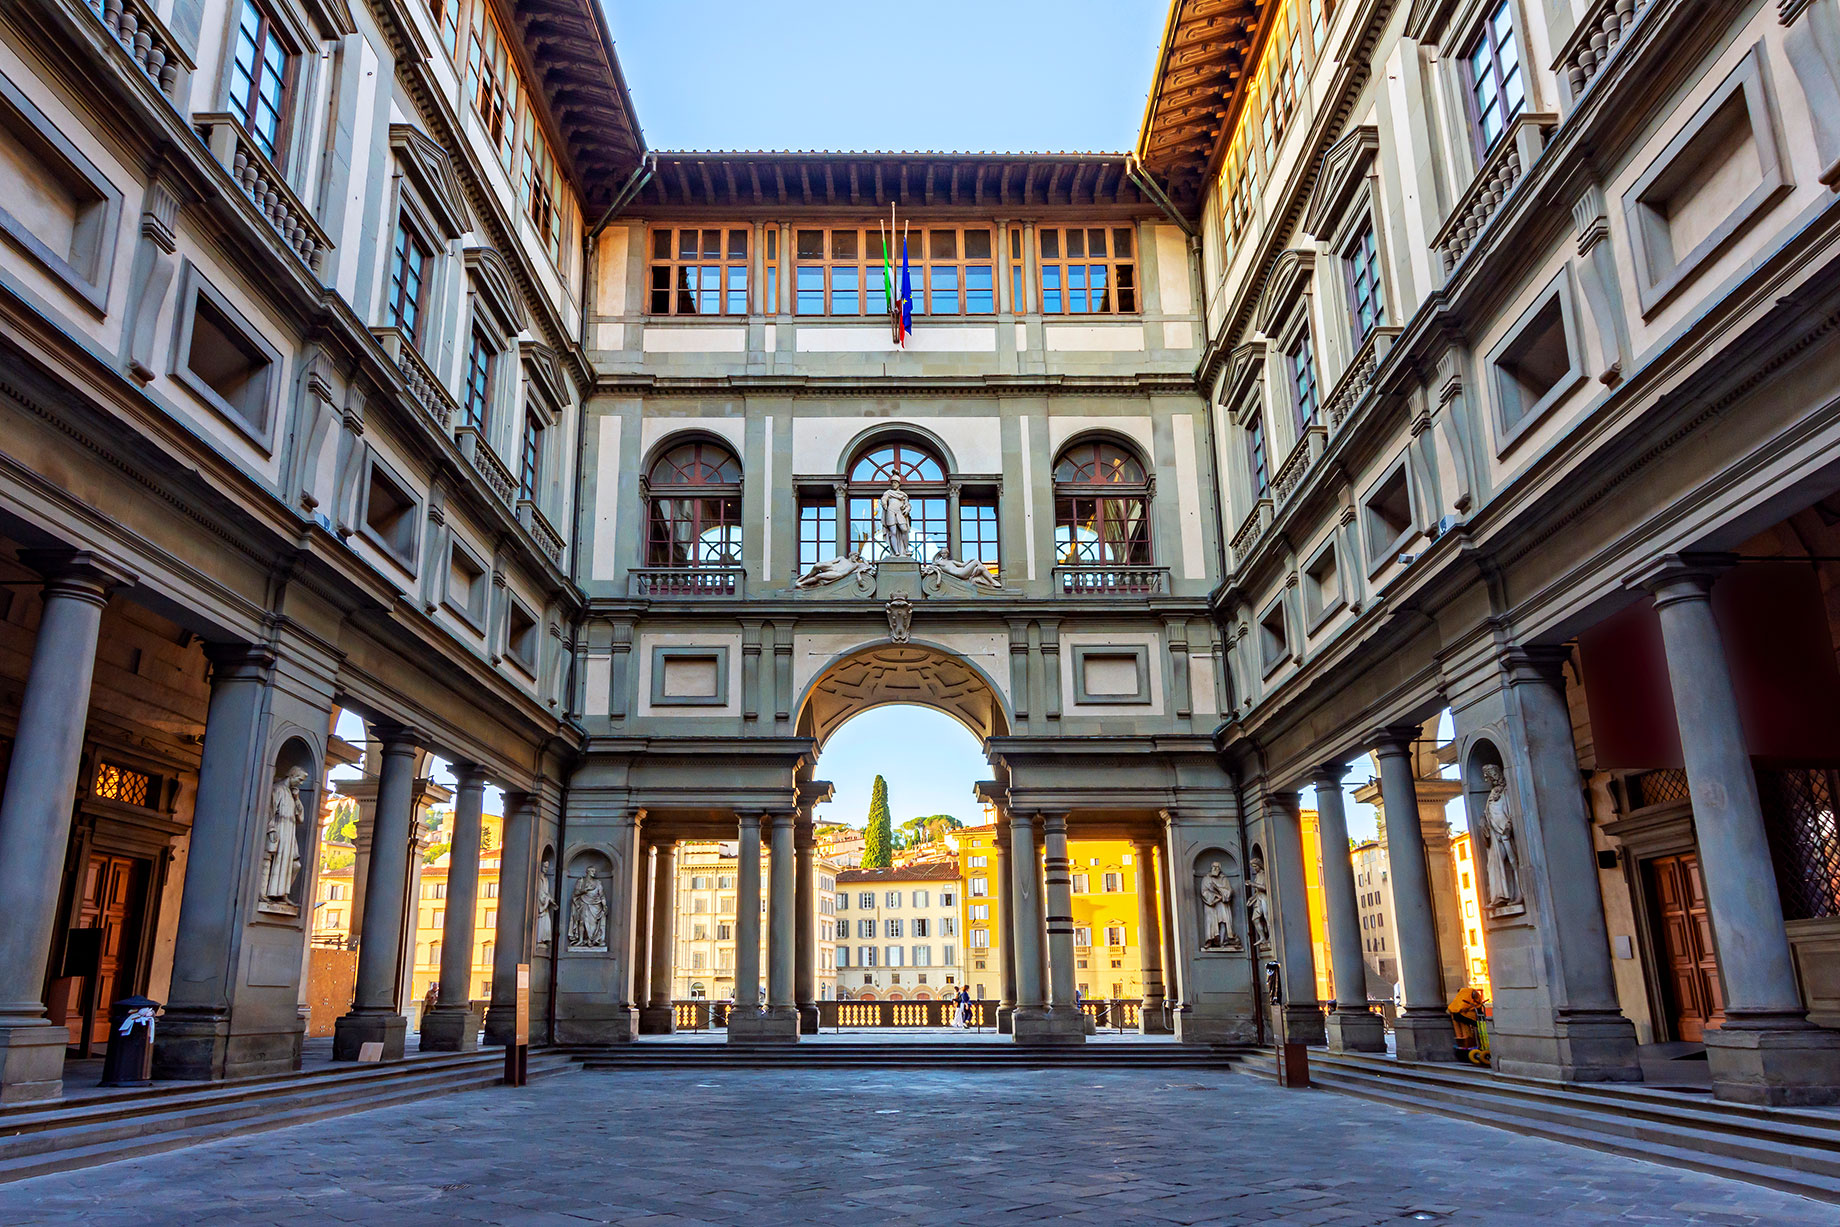 Uffizi Gallery - Florence, Italy